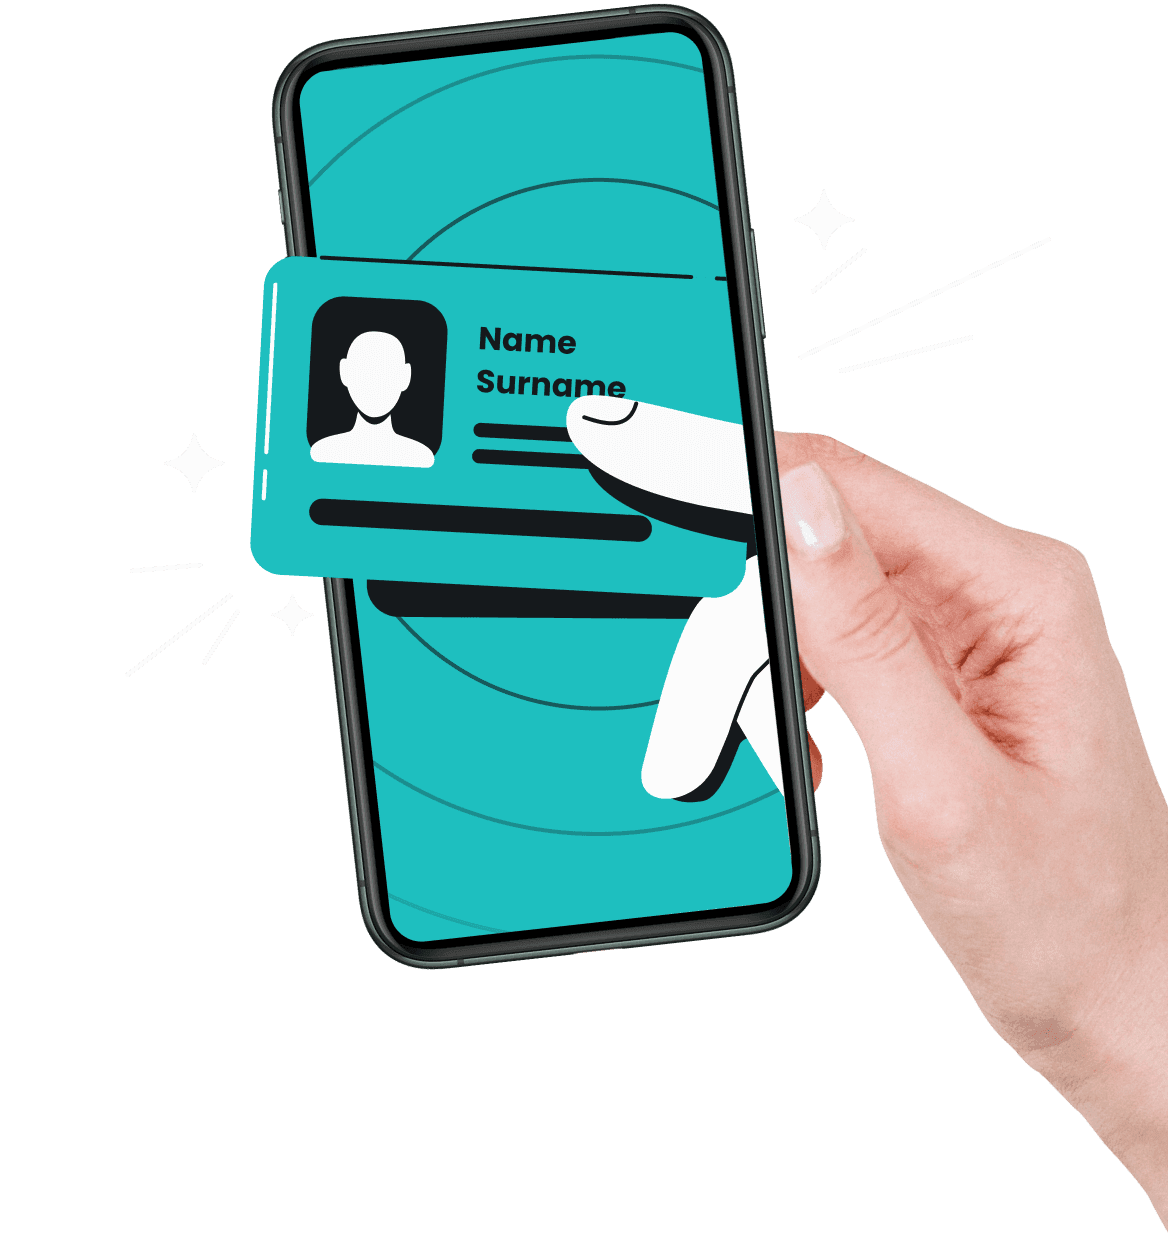 Uma mão entrando em uma tela de celular, com dois dedos animados segurando um cartão com nome e sobrenome